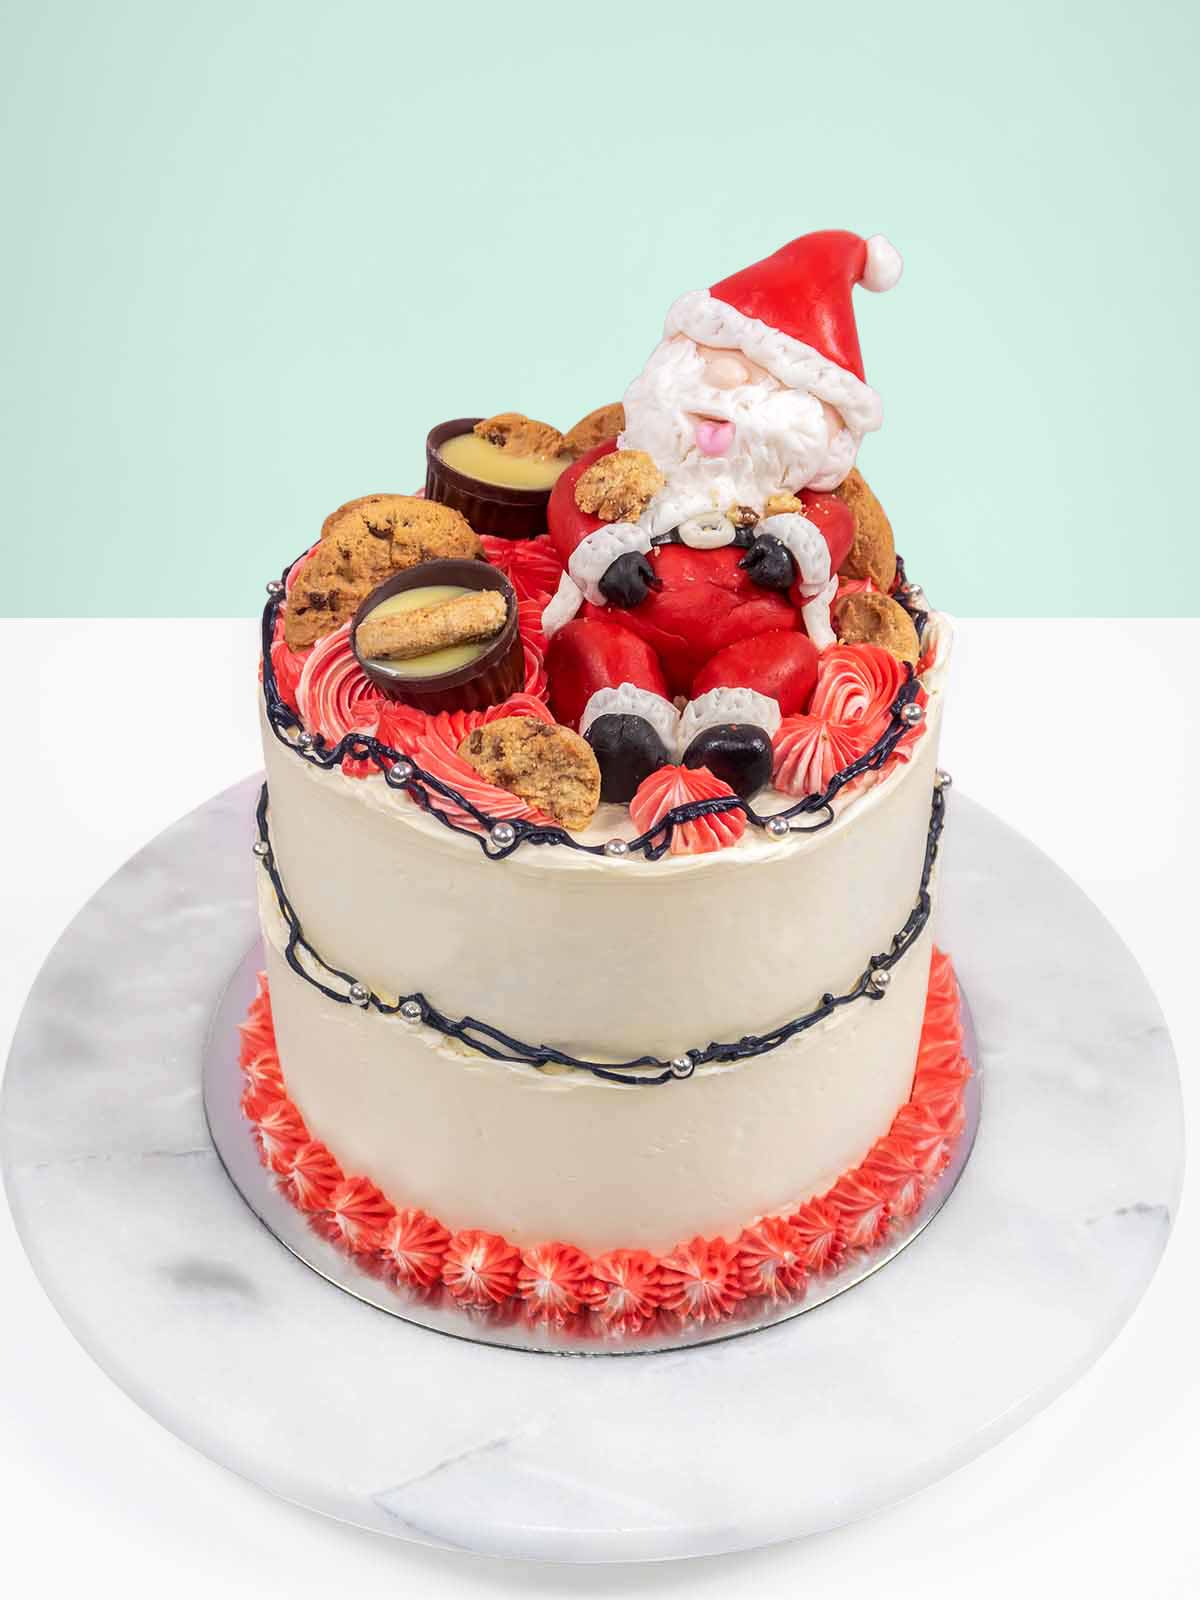 Christmas Cake Designs: 20 Santa Claus Cakes